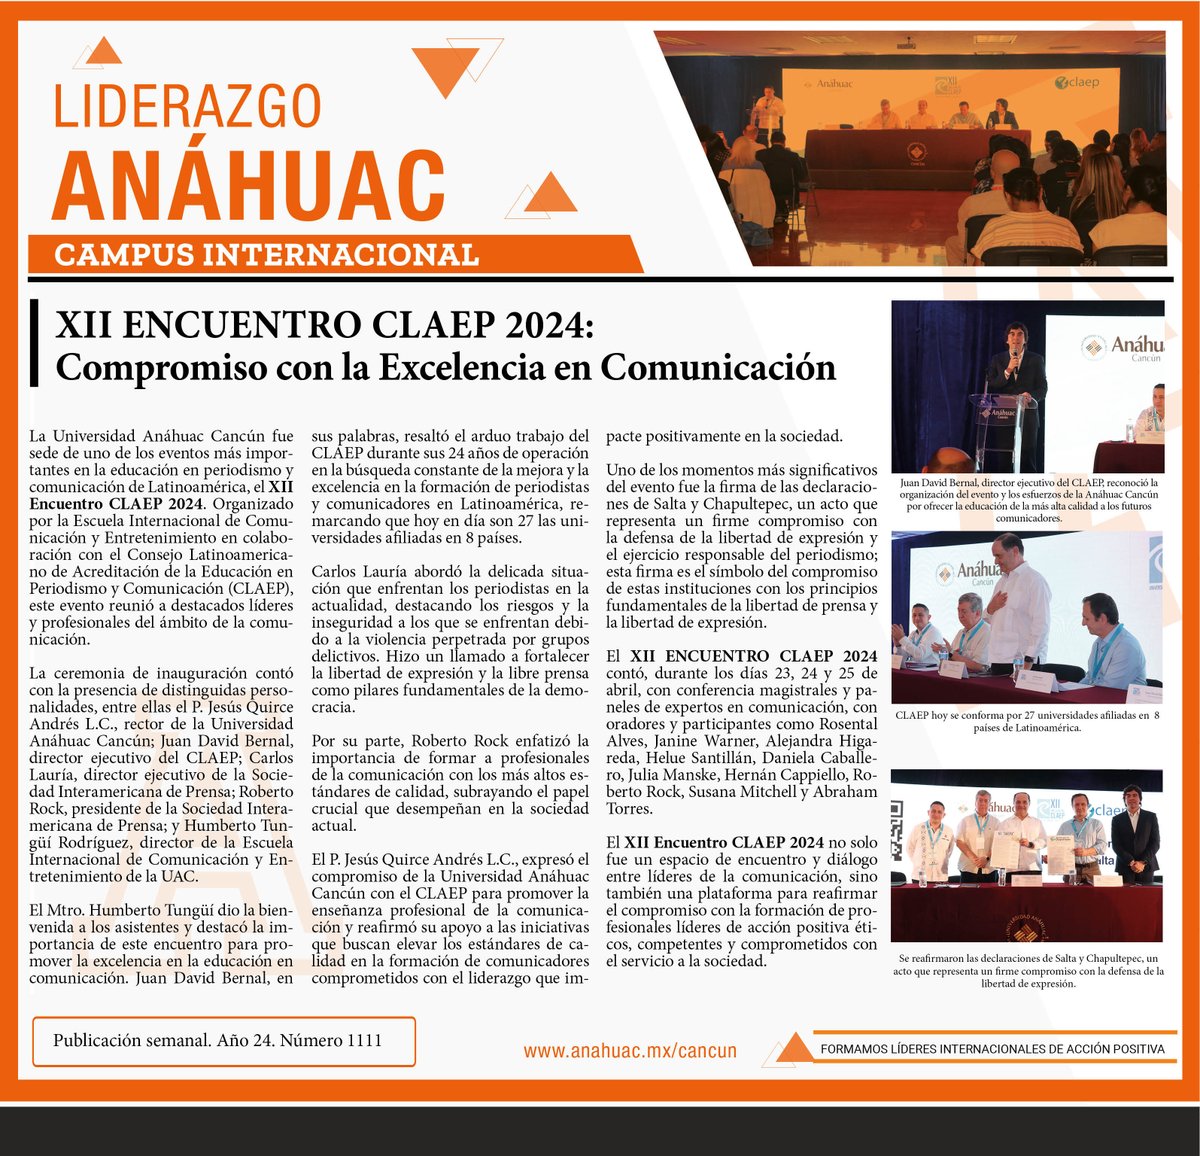 Les compartimos el Liderazgo Anáhuac publicado este domingo en el periódico 🗞️ Novedades de Q. Roo. bit.ly/4a4yxnL 🔸Somos Anáhuac, la Universidad Internacional de Cancún. #líderesinternacionalesdeacciónpositiva